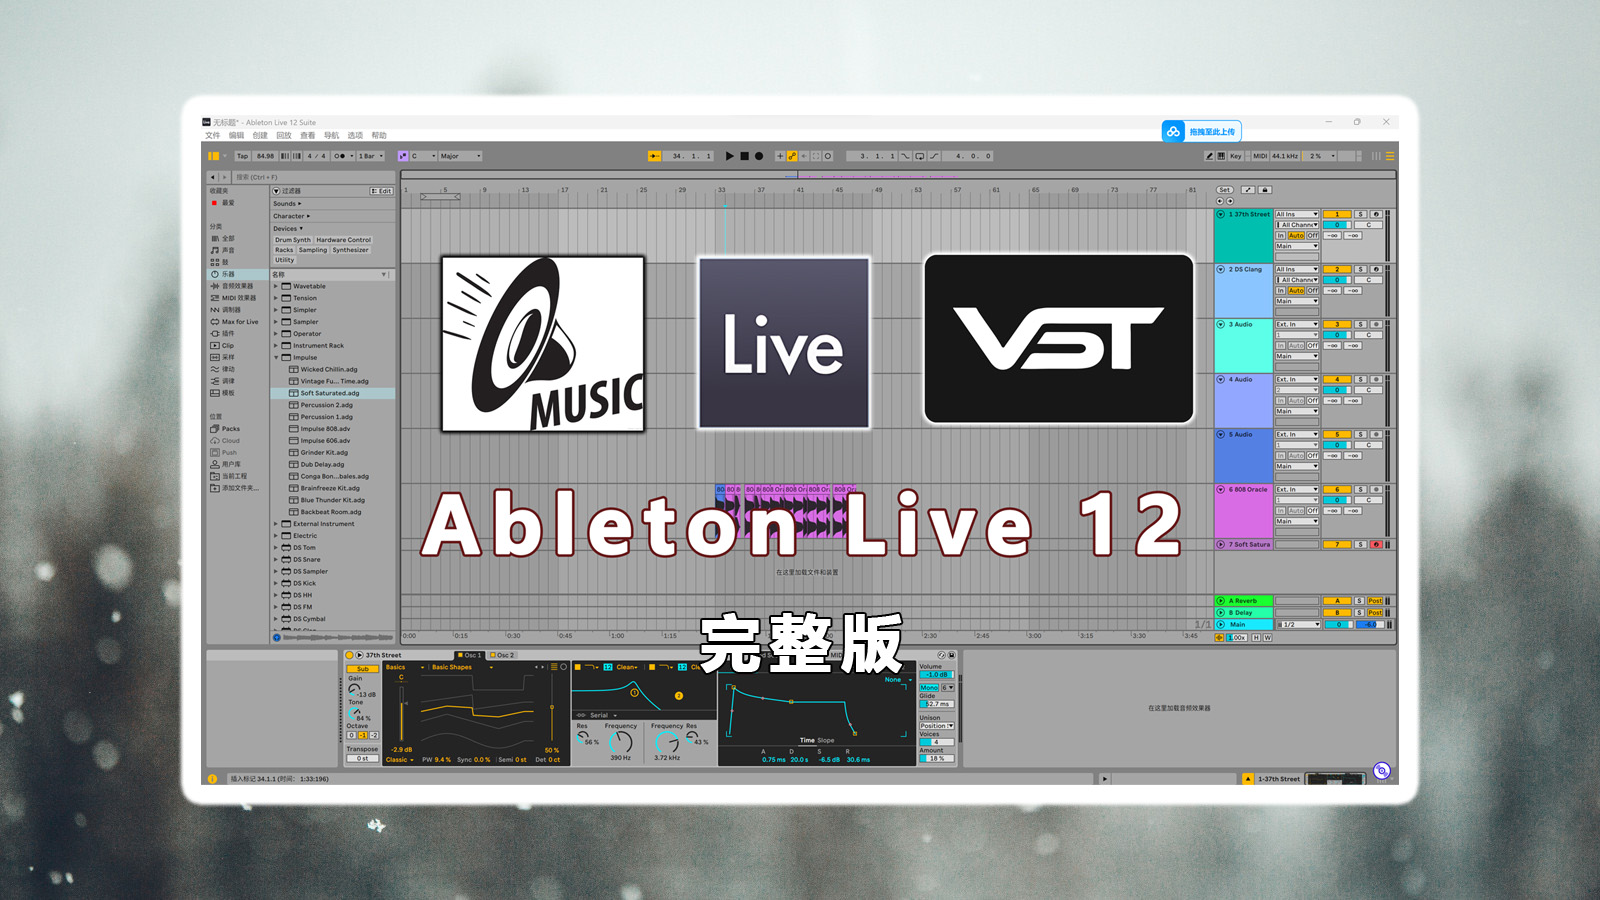 Ableton Live 12 软件最新正式完整版下载！【软件+官方音色库+音源插件MaxForlive+一套精选采样包Ableton工程文件】【完整版250GB】【音乐制作编曲混音软件】